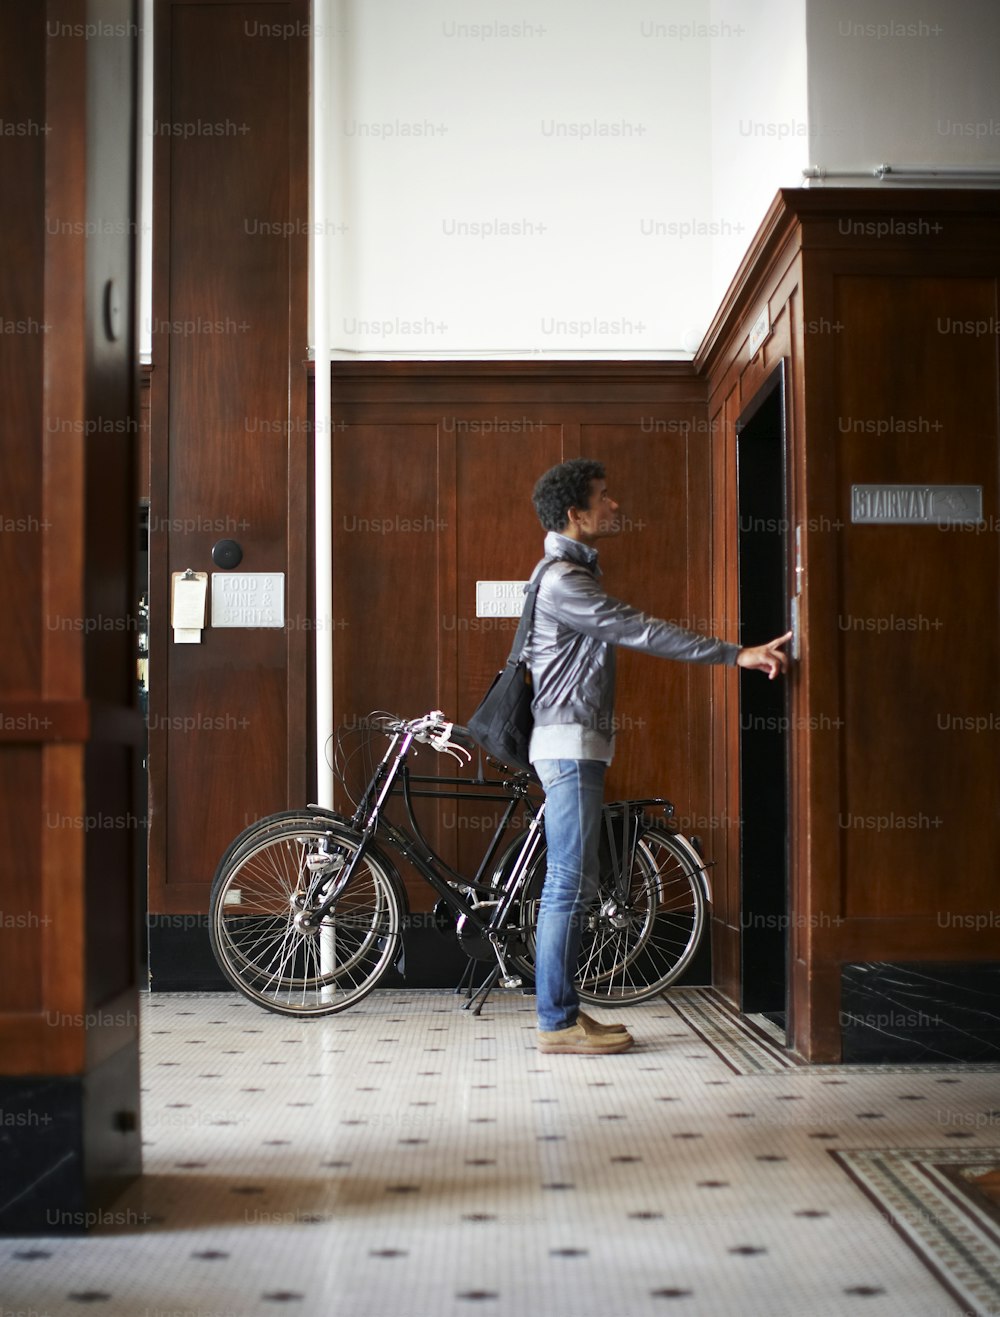 Una persona parada junto a una bicicleta en una habitación